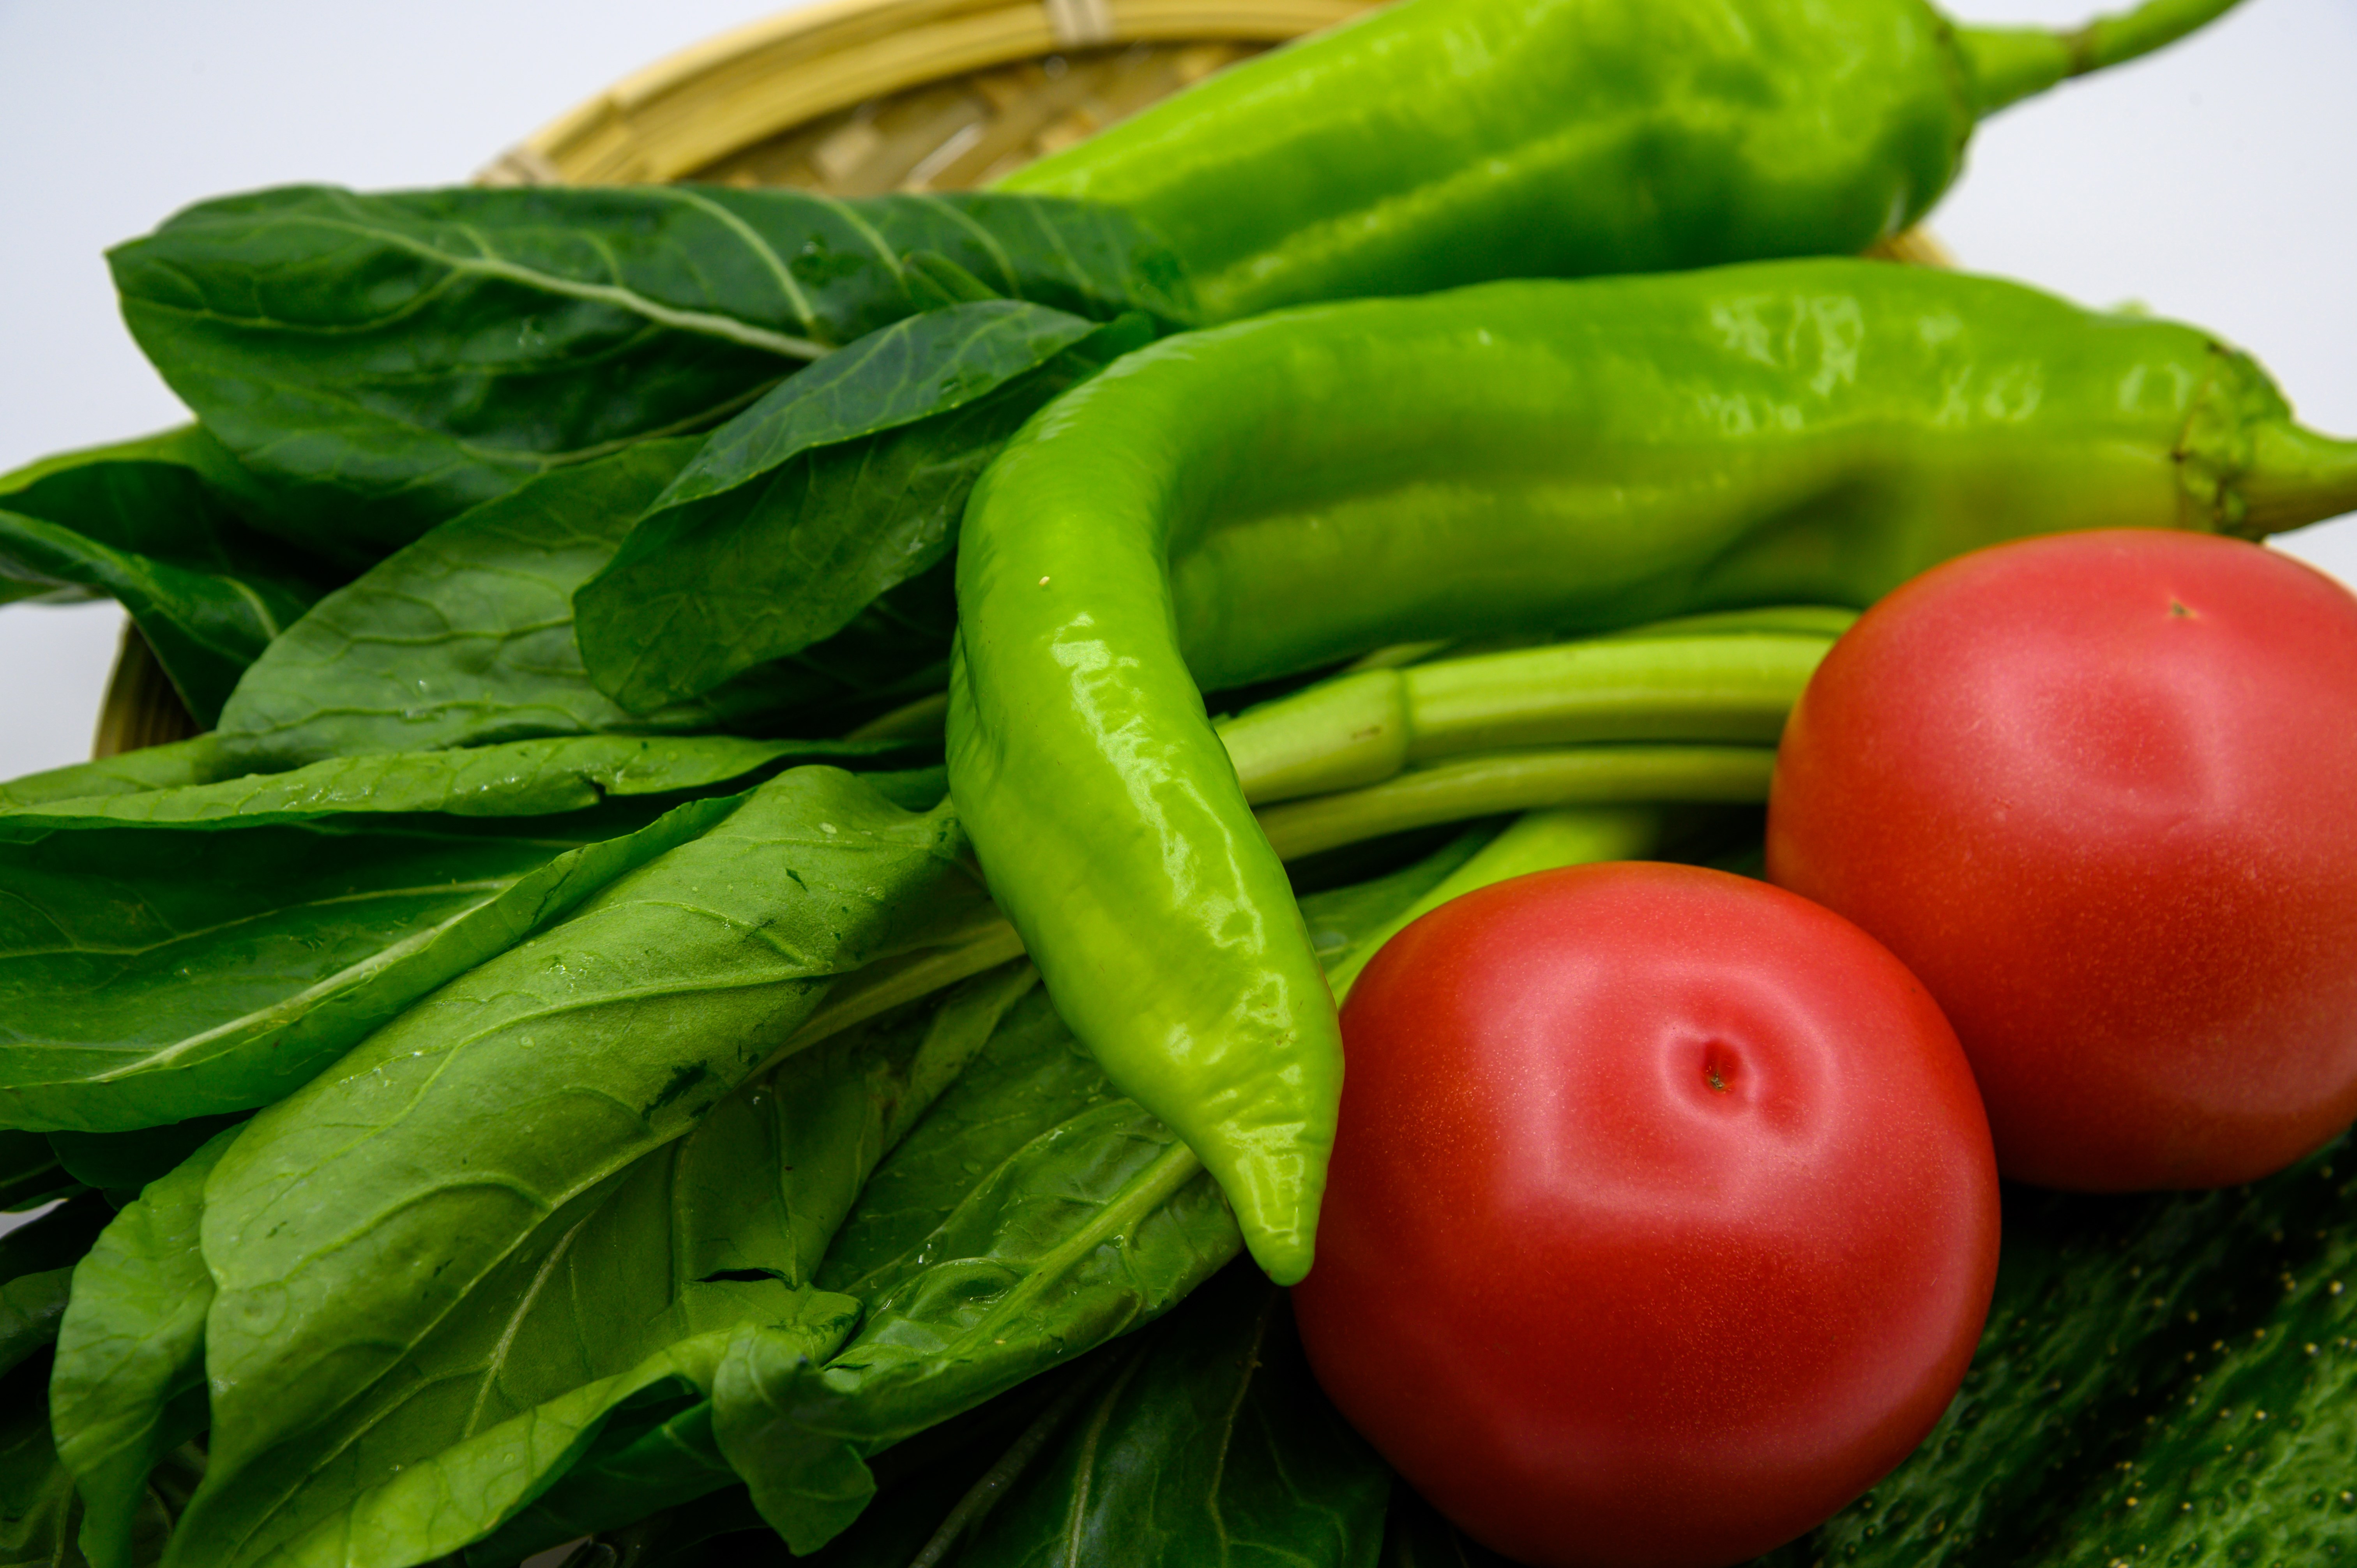 蔬菜 植物 食物 食品 健康 食材 食物原料 农作物 种植的 低热量 营养